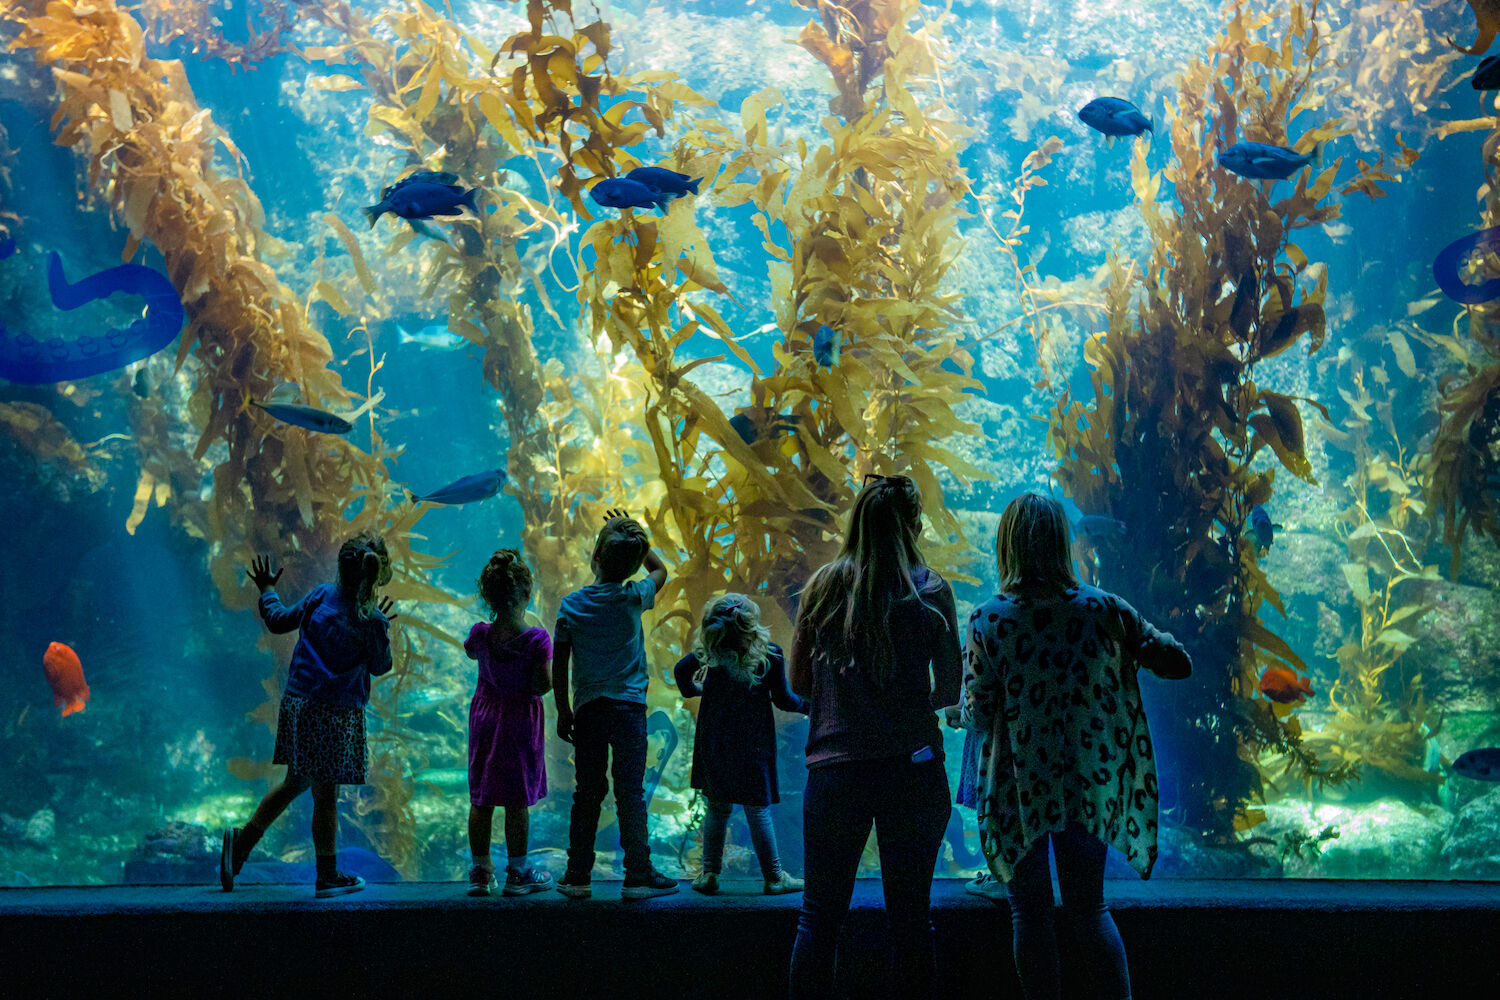 Birch Aquarium at Scripps Children